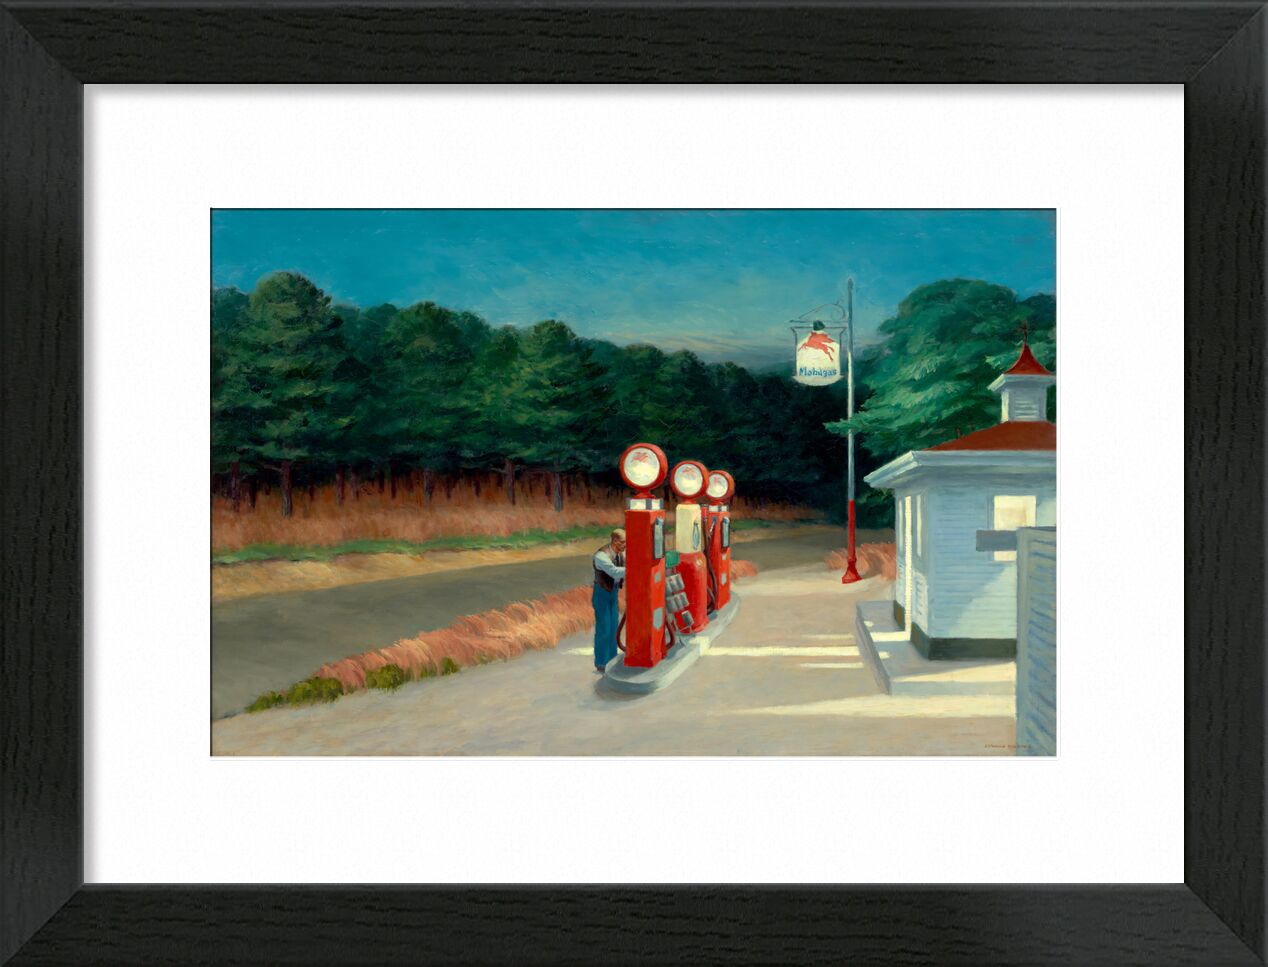 Gas - Edward Hopper von Bildende Kunst, Prodi Art, Bar, Wald, Station Essenz, Trichter, Edward Hopper, Einsamkeit